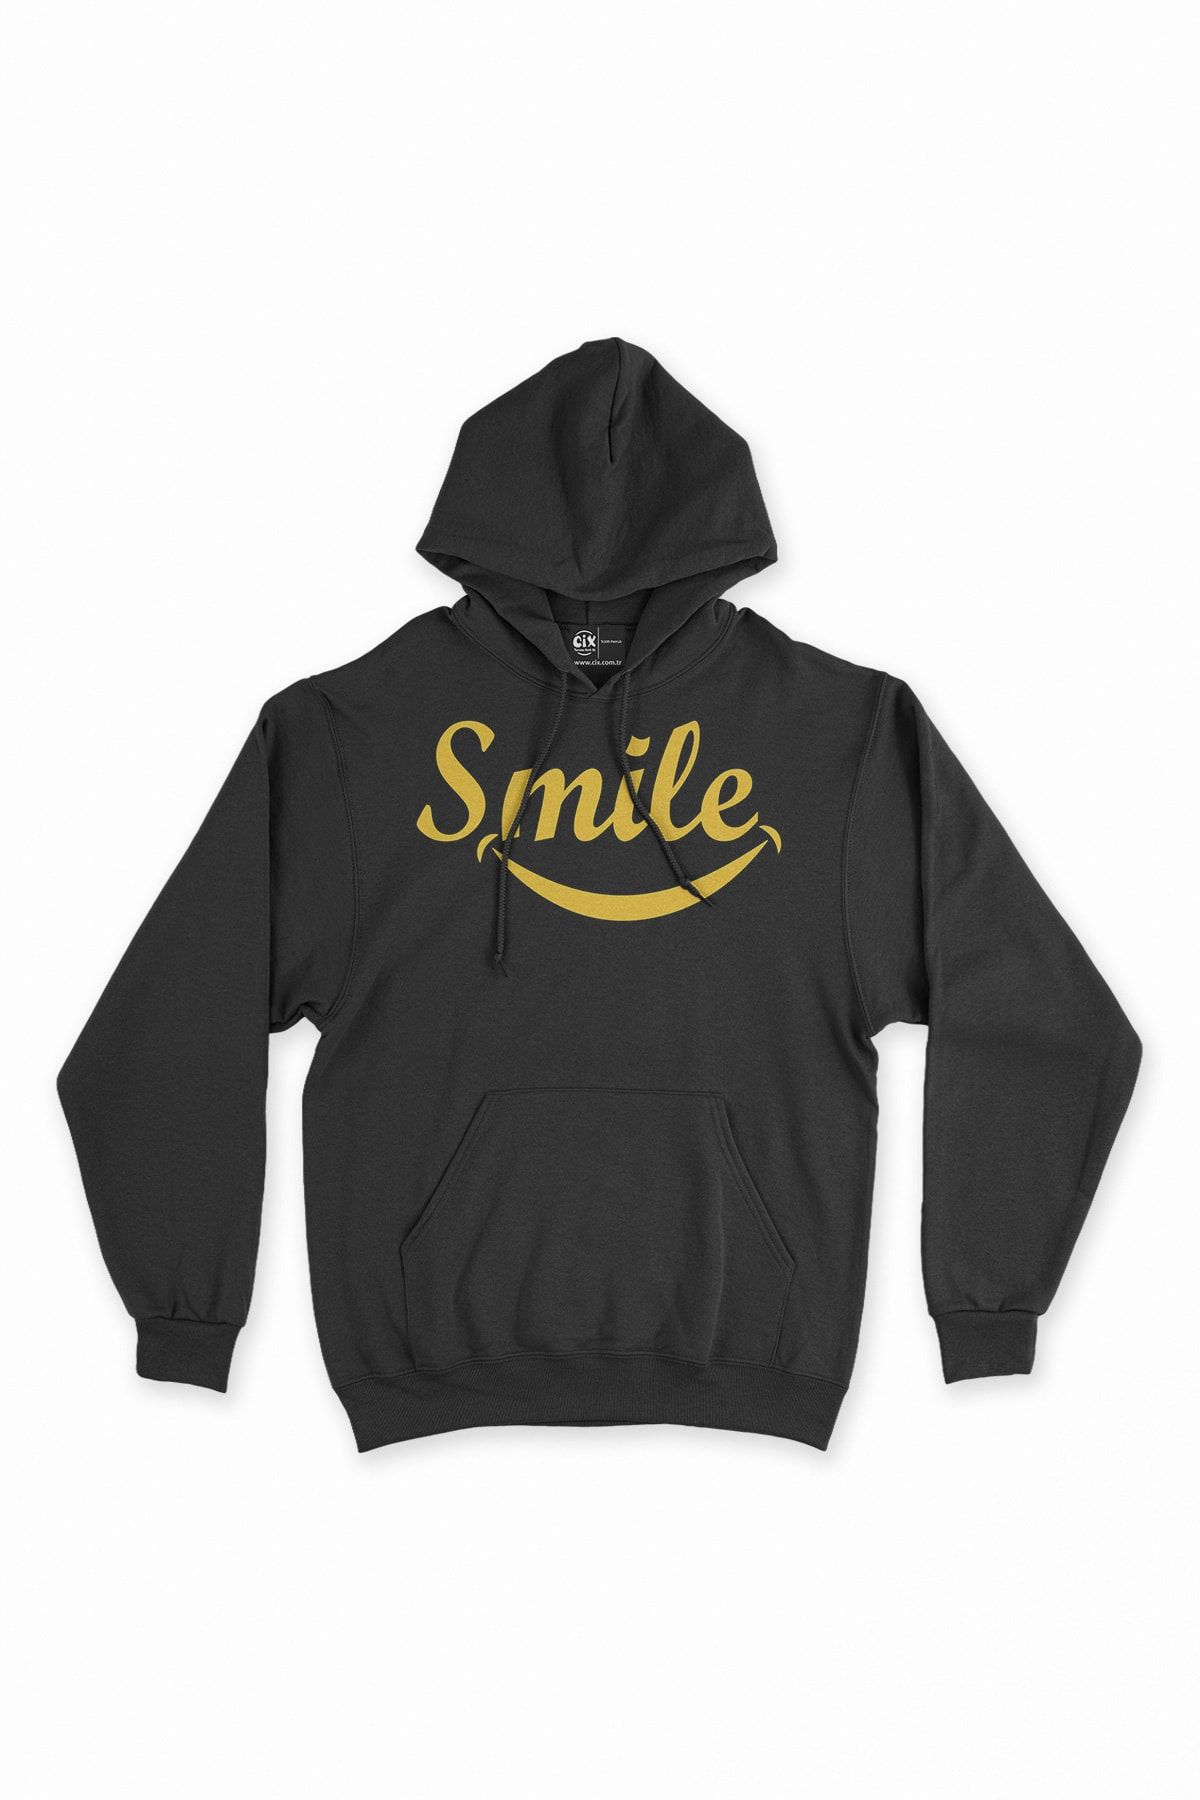 Cix Smile Gülümse Siyah Sweatshirt Hoodie